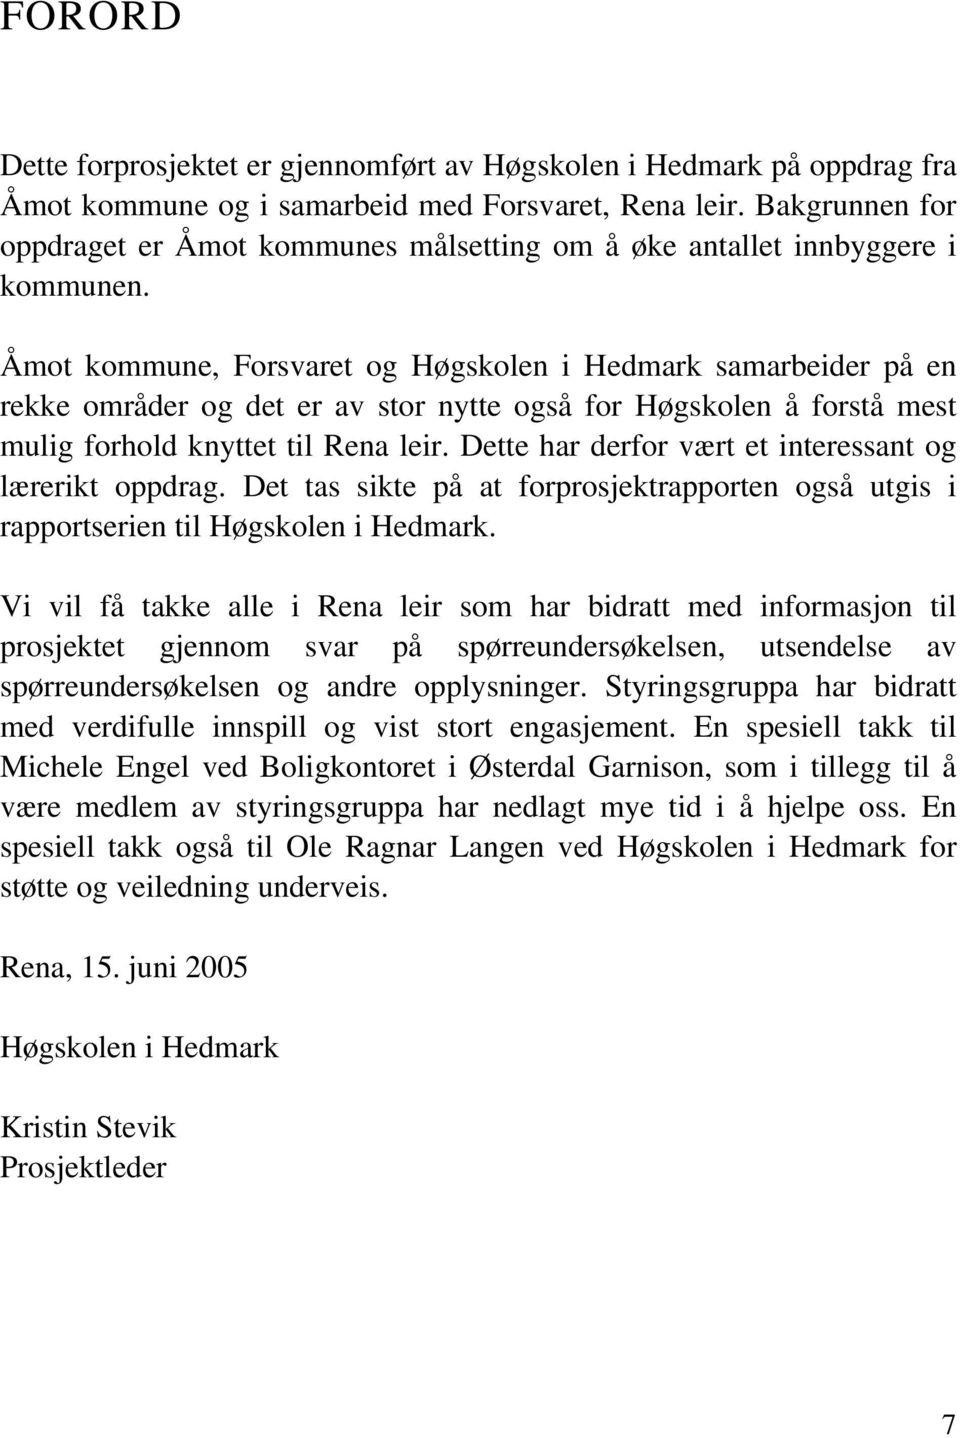 Åmot kommune, Forsvret og Høgskolen i Hemrk smreier på en rekke områer og et er v stor nytte også for Høgskolen å forstå mest mulig forhol knyttet til Ren leir.